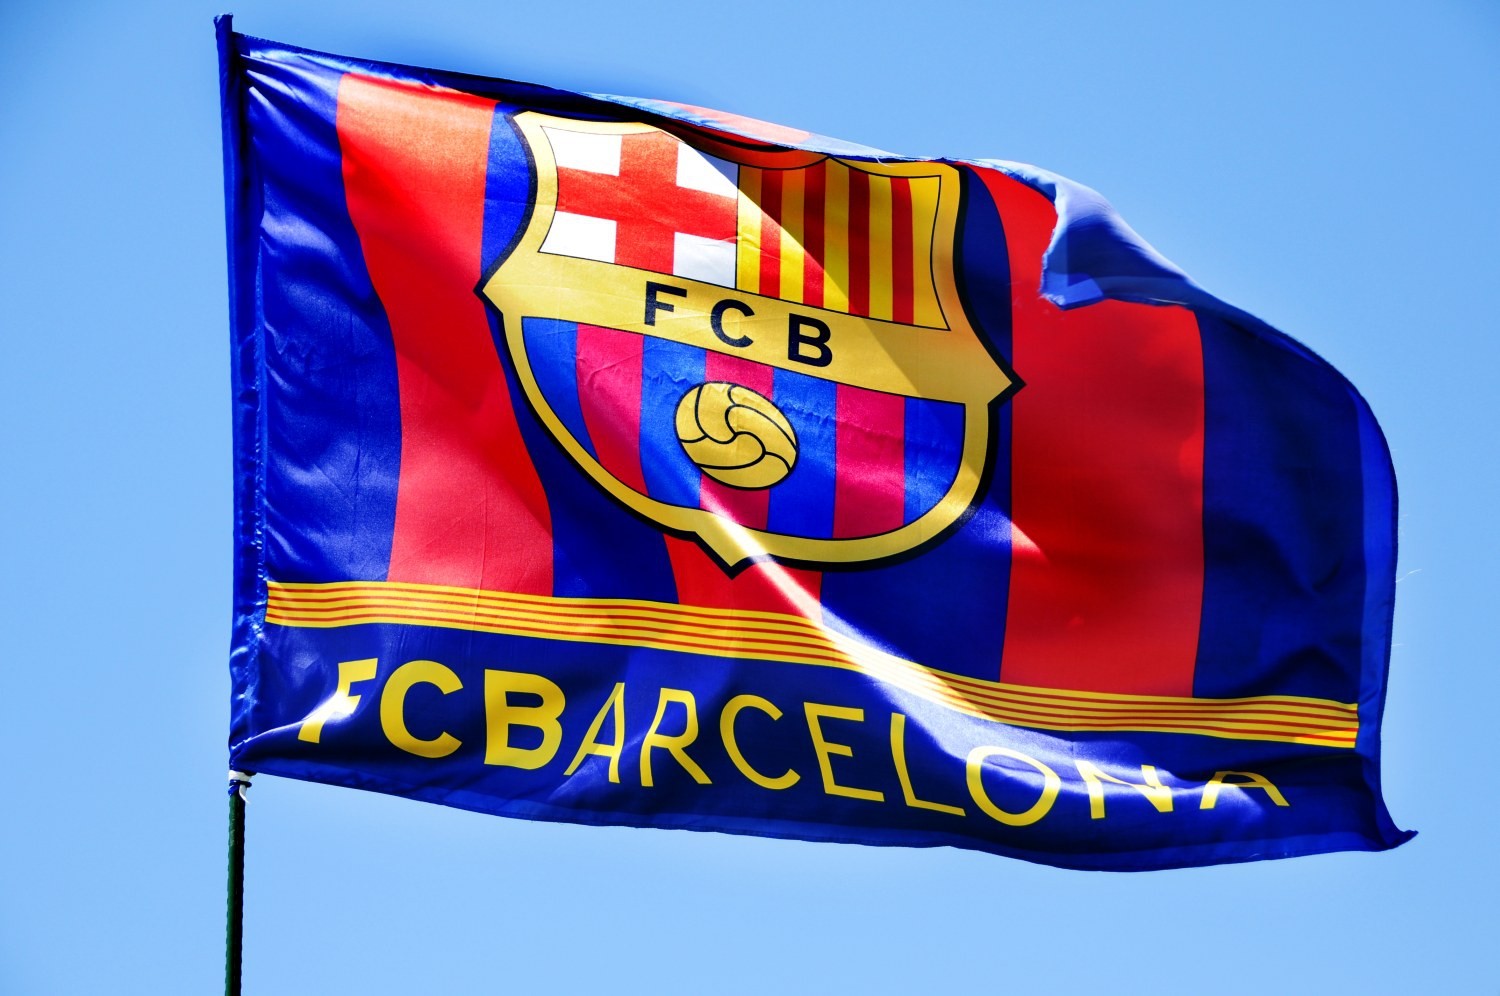 OFICJALNIE: FC Barcelona poznała sześciu potencjalnych rywali w Lidze Europy